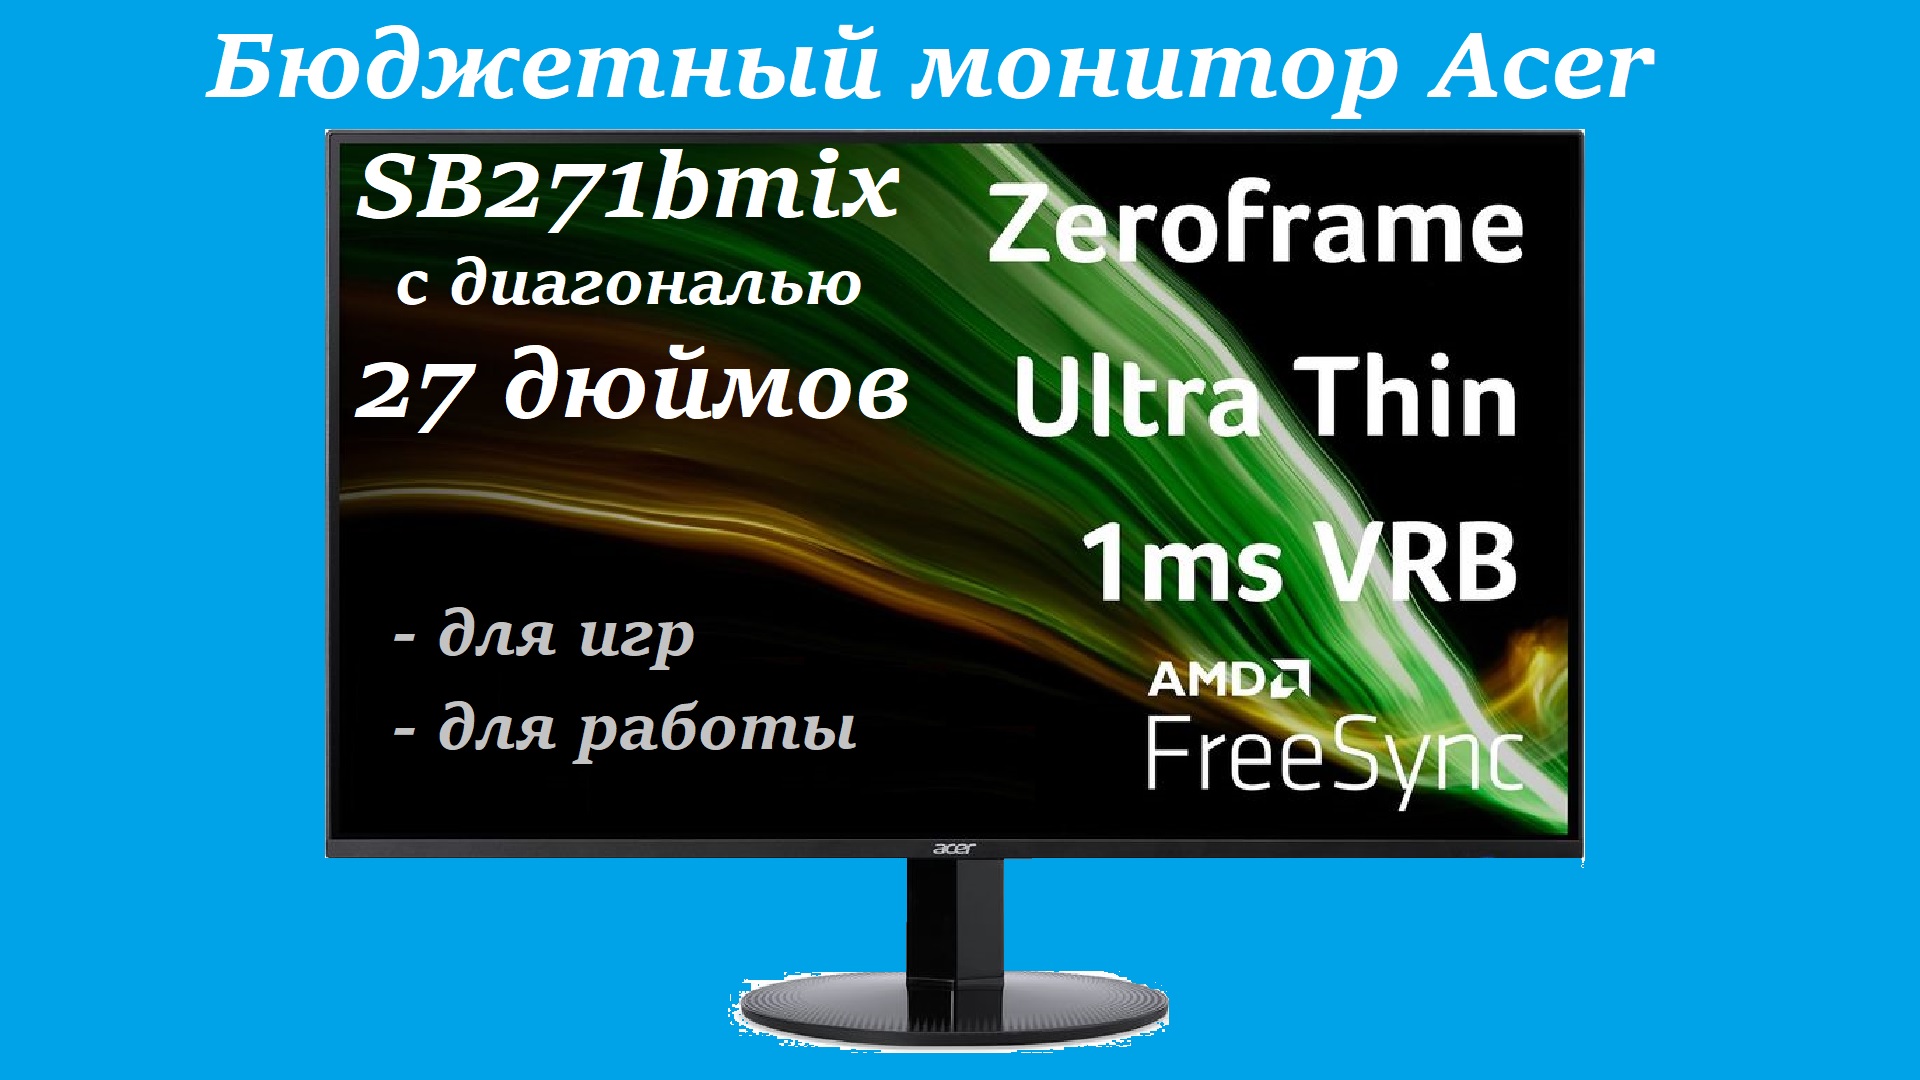 Бюджетный монитор Acer SB271bmix с диагональю 27 дюймов. Обзор